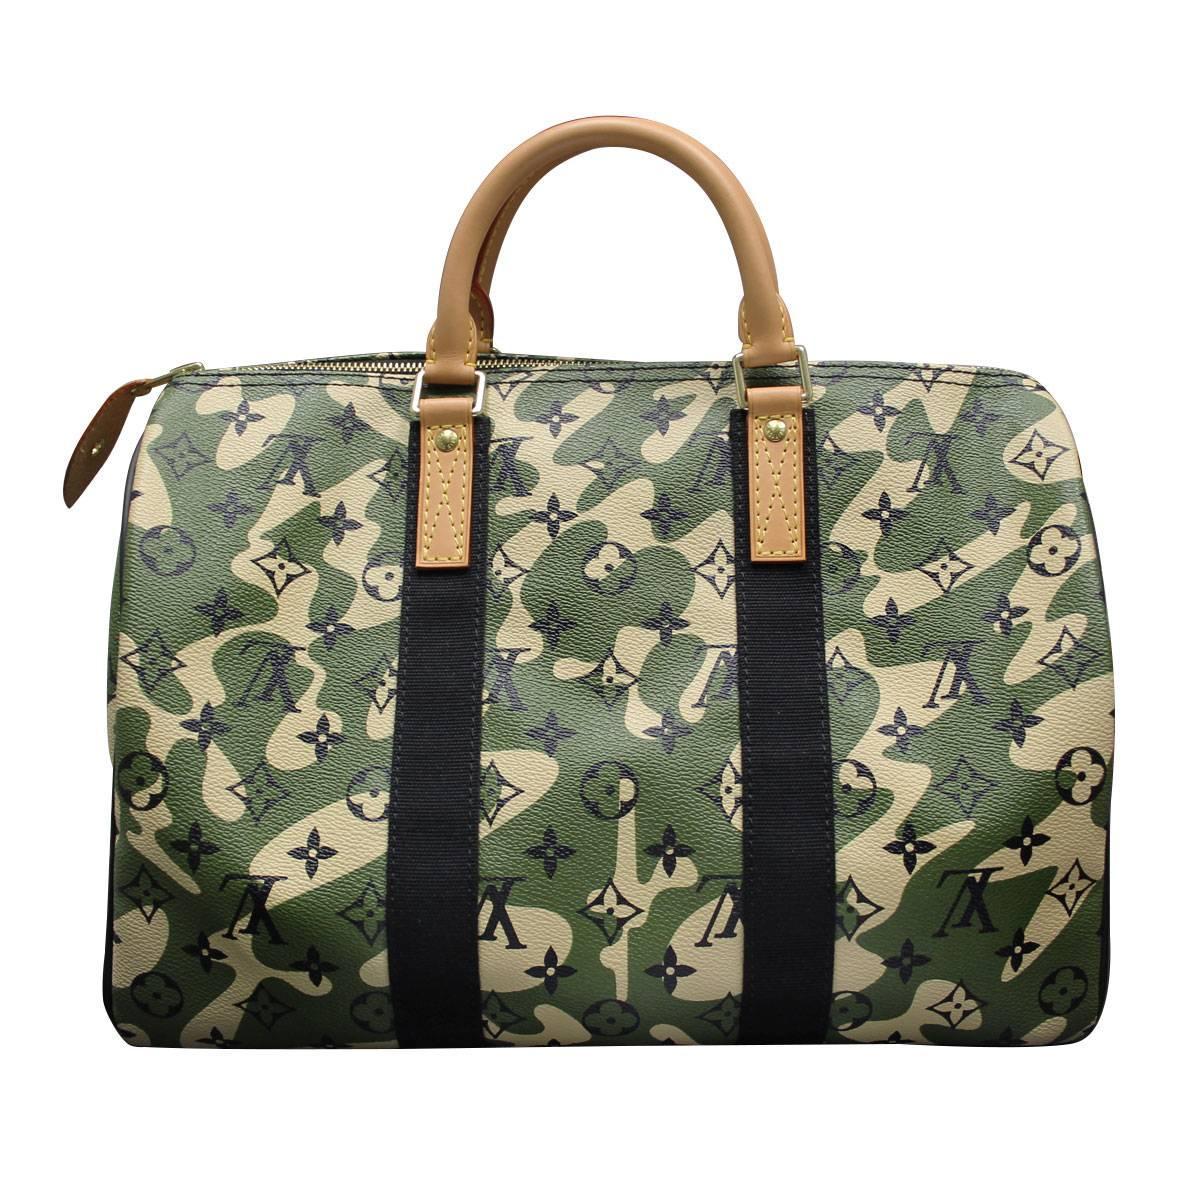 Louis Vuitton Green Camo Bags For Women's